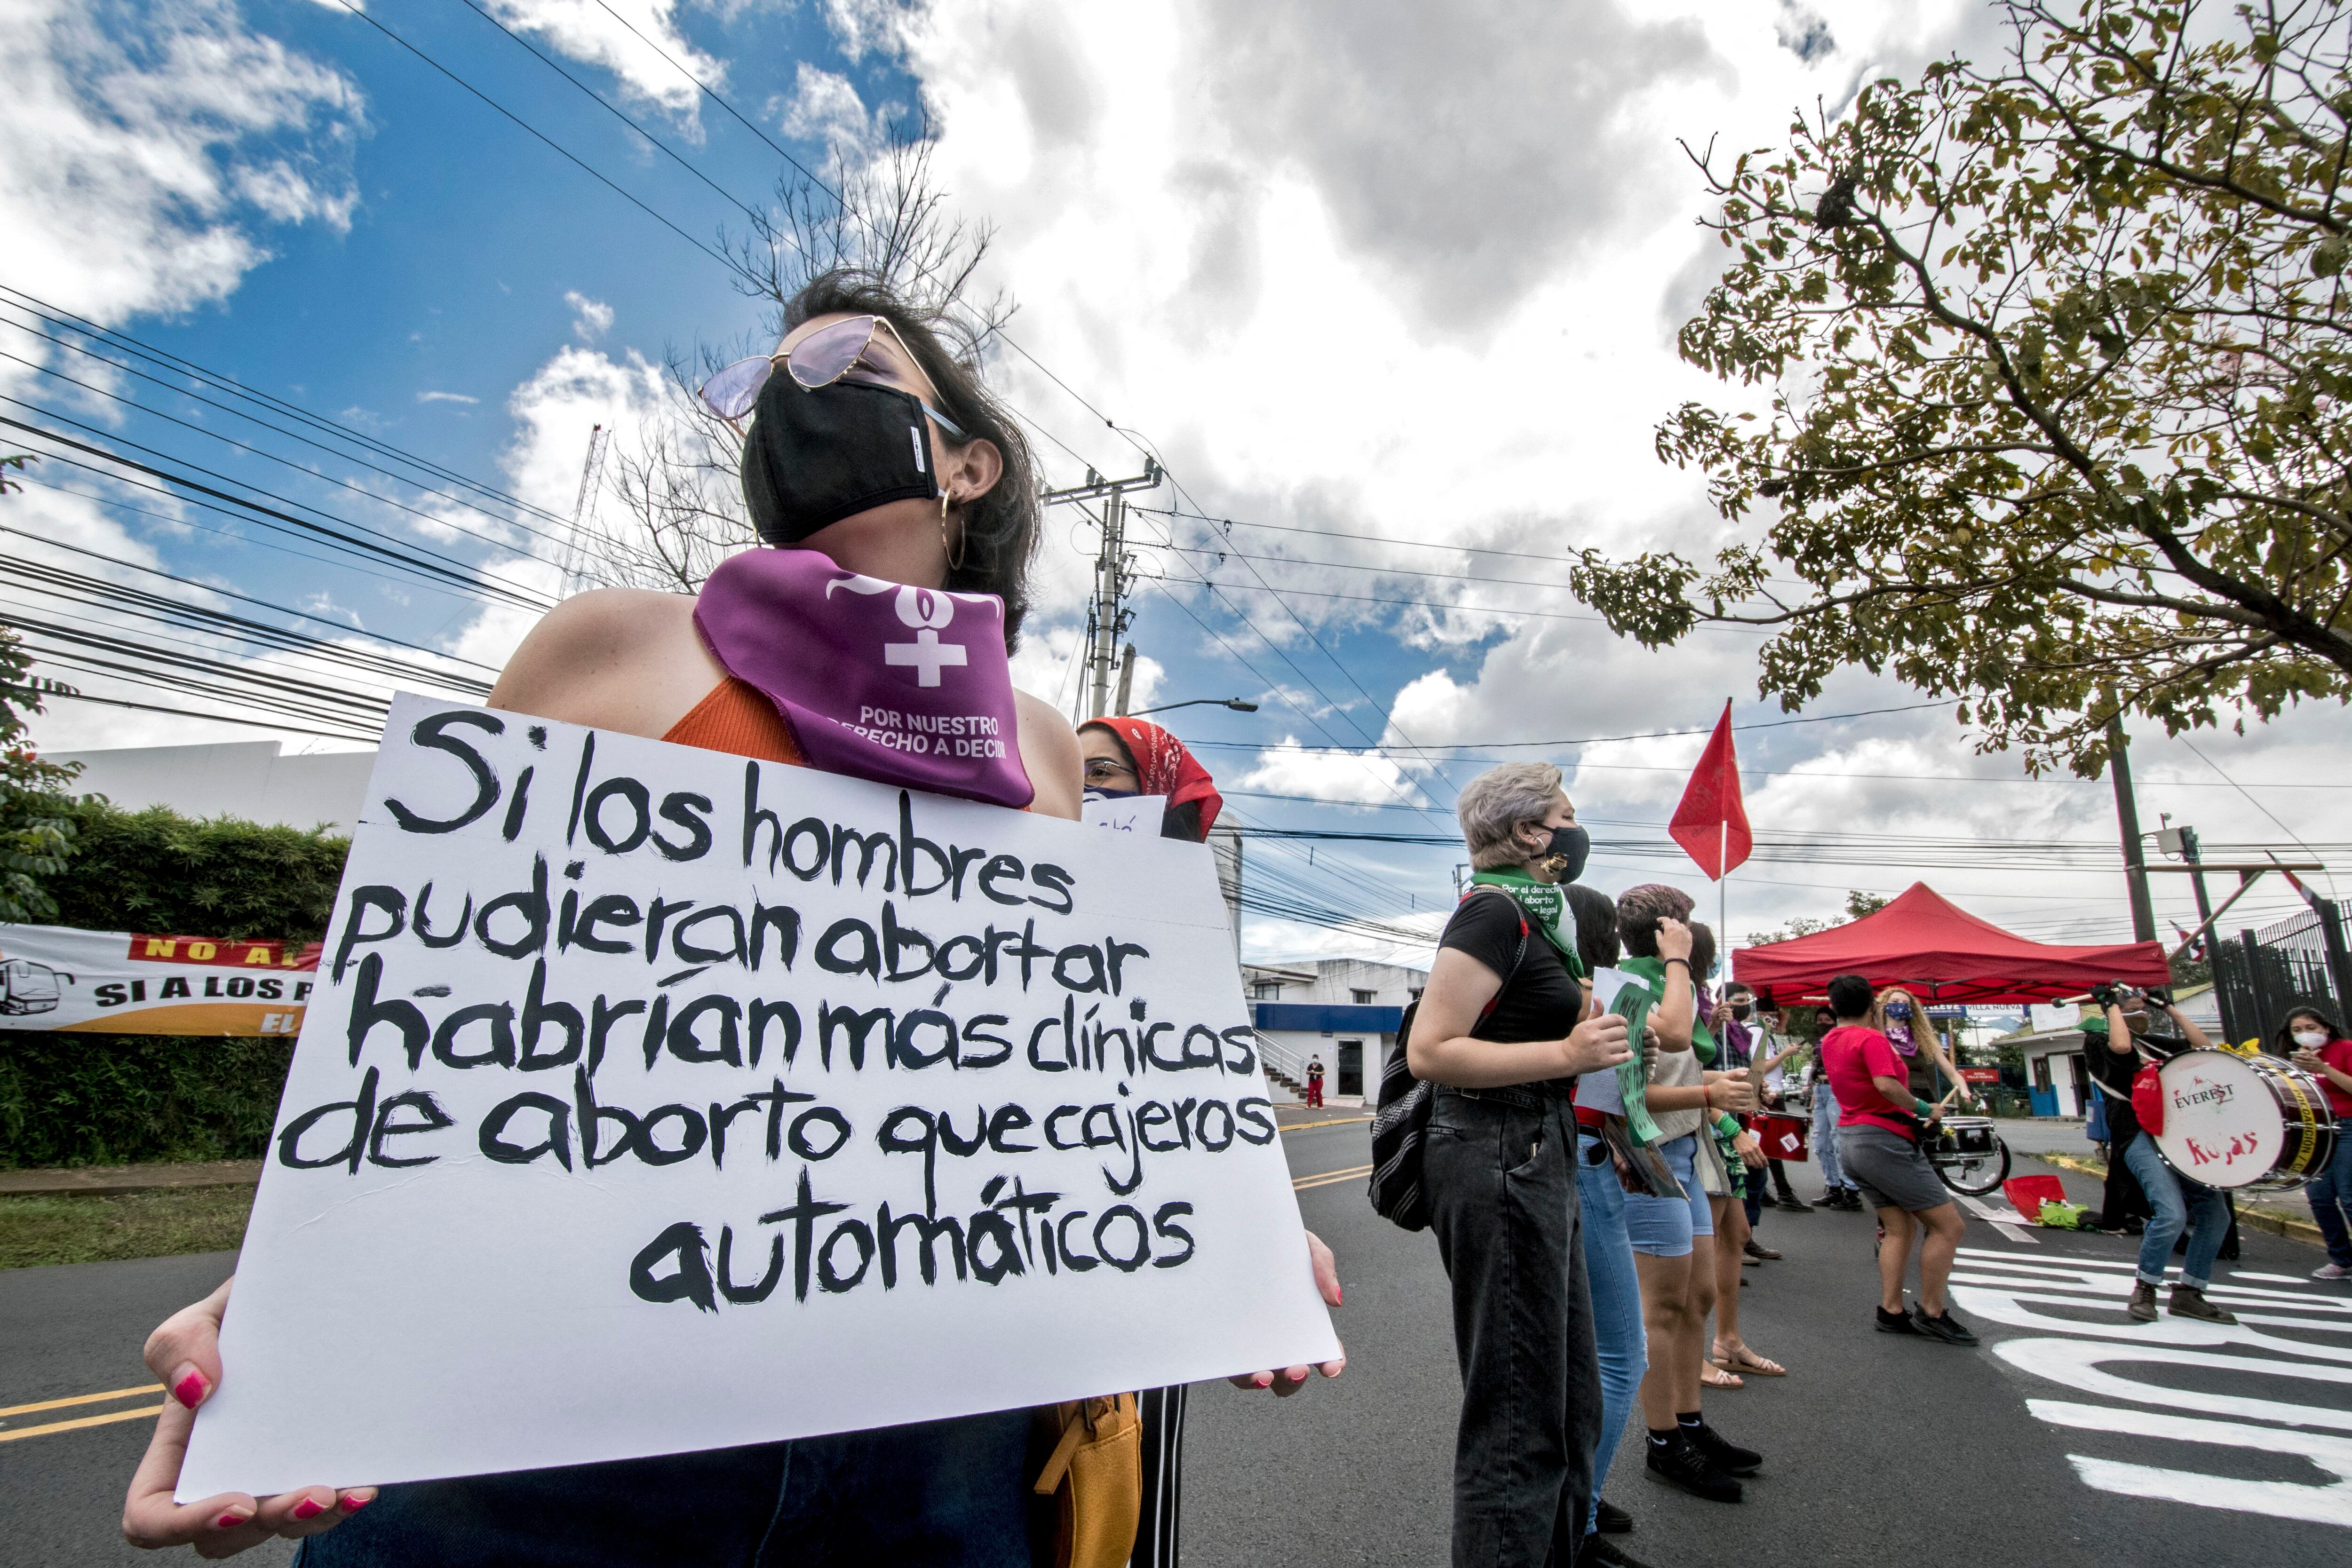 Una mujer sostiene un cartel que dice "Si los hombres pudieran abortar habría más clínicas de aborto que cajeros automáticos", durante una manifestación frente a la casa presidencial a favor de la legalización del aborto, en San José, Costa Rica, el 28 de septiembre de 2020. (Foto: Ezequiel BECERRA / AFP)